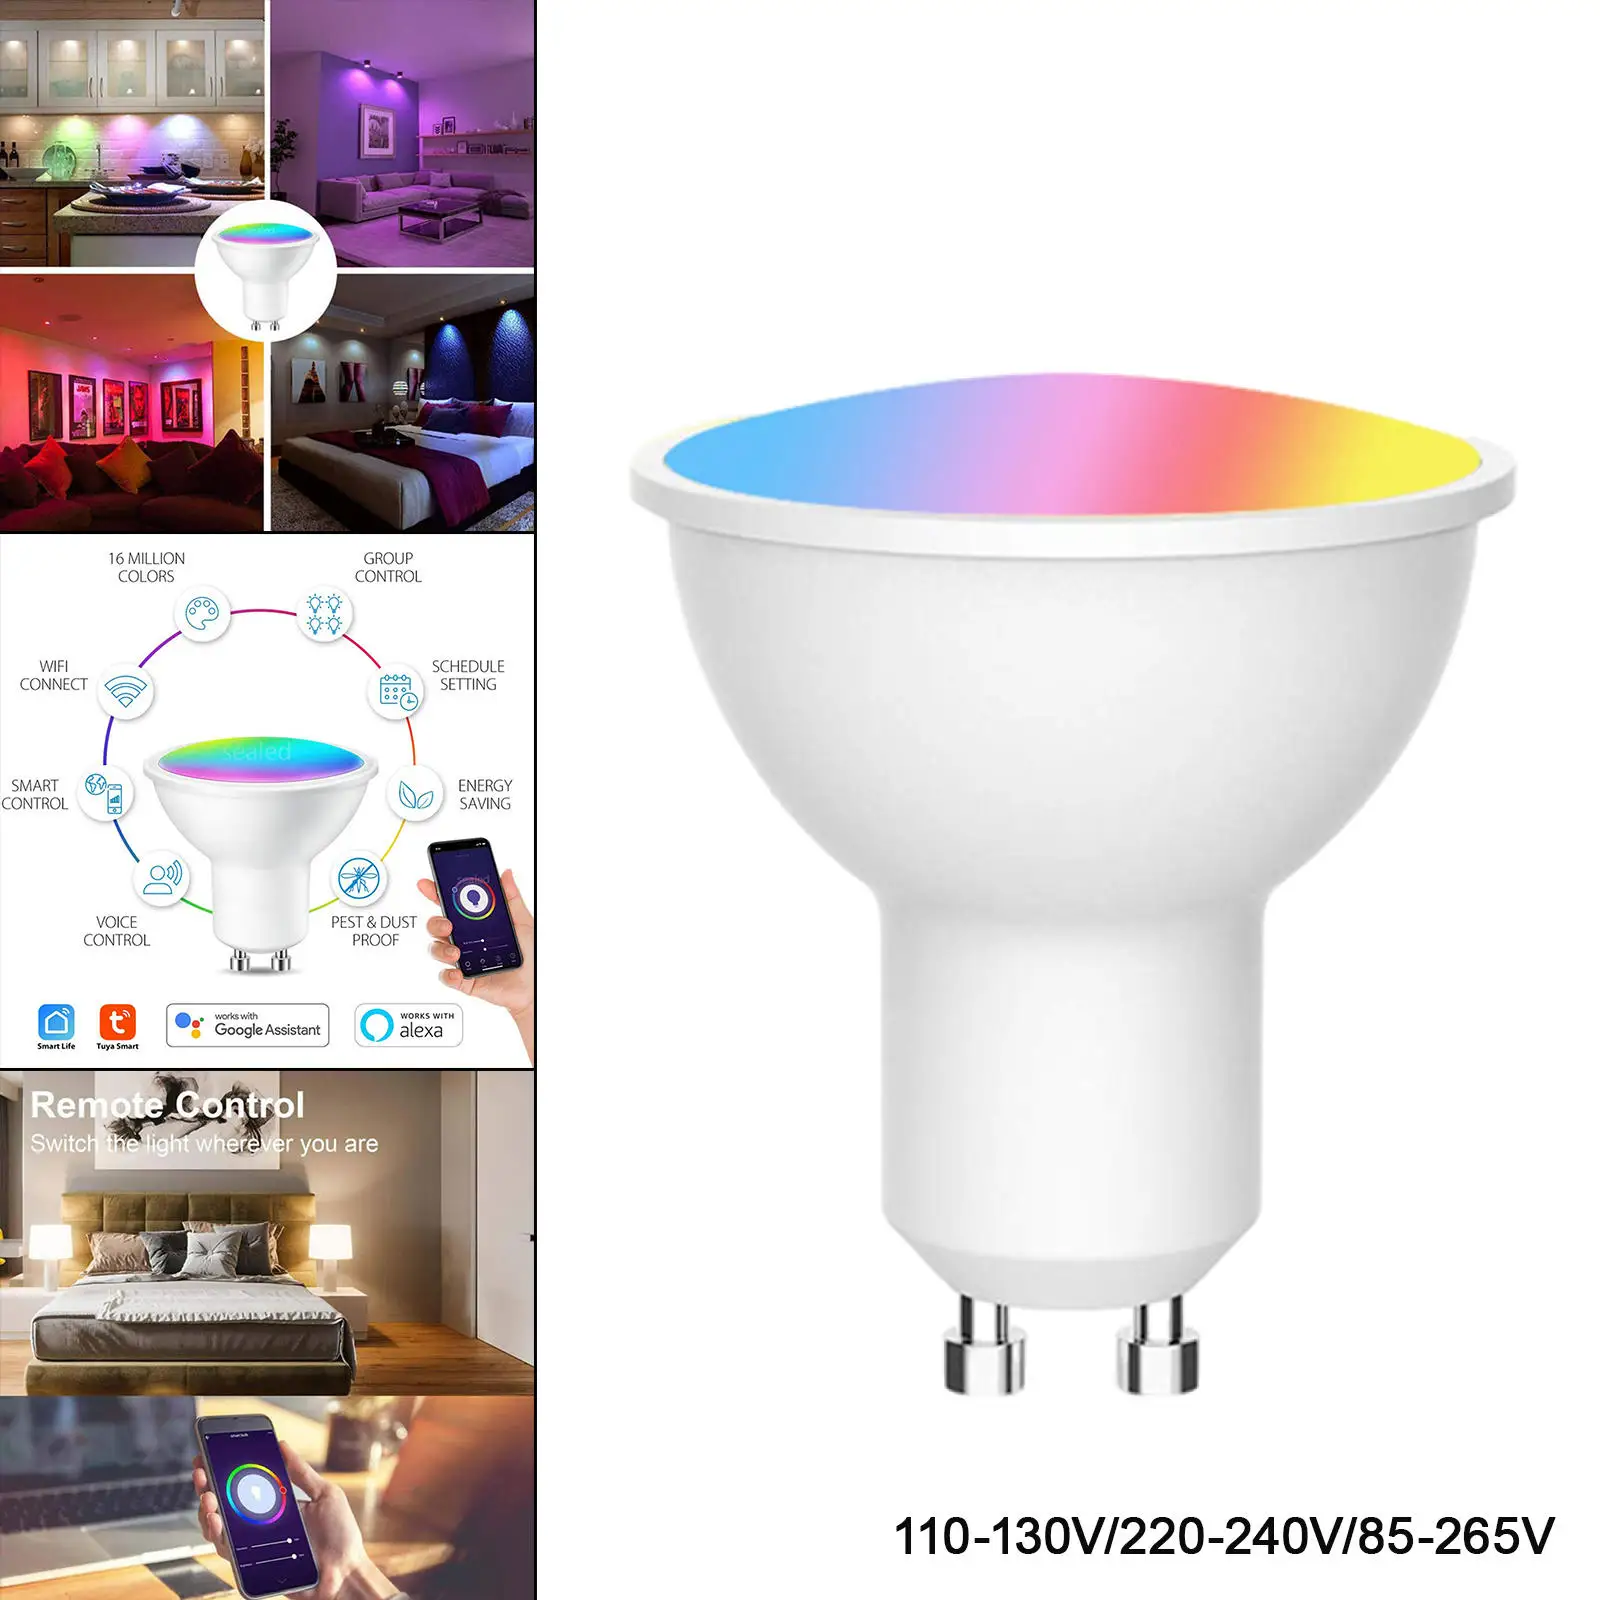 Smart Light Bulb GU10 Base 16 Million Color 32W Equivalent Mood Light 8 Scene Model for Google Home Wedding Indoor/Outdoor Home